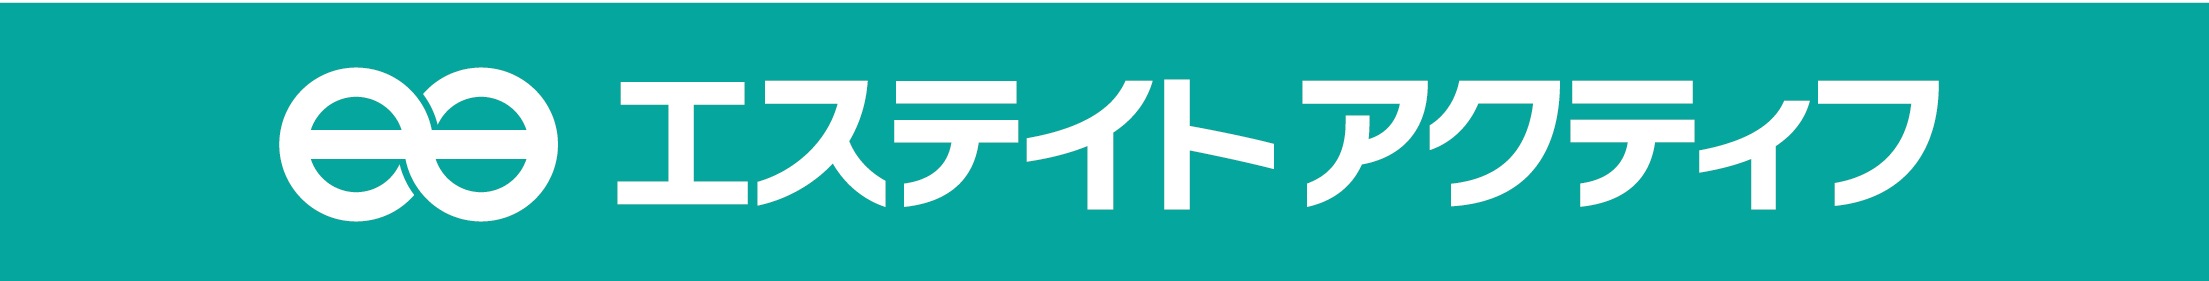 ea_logo1